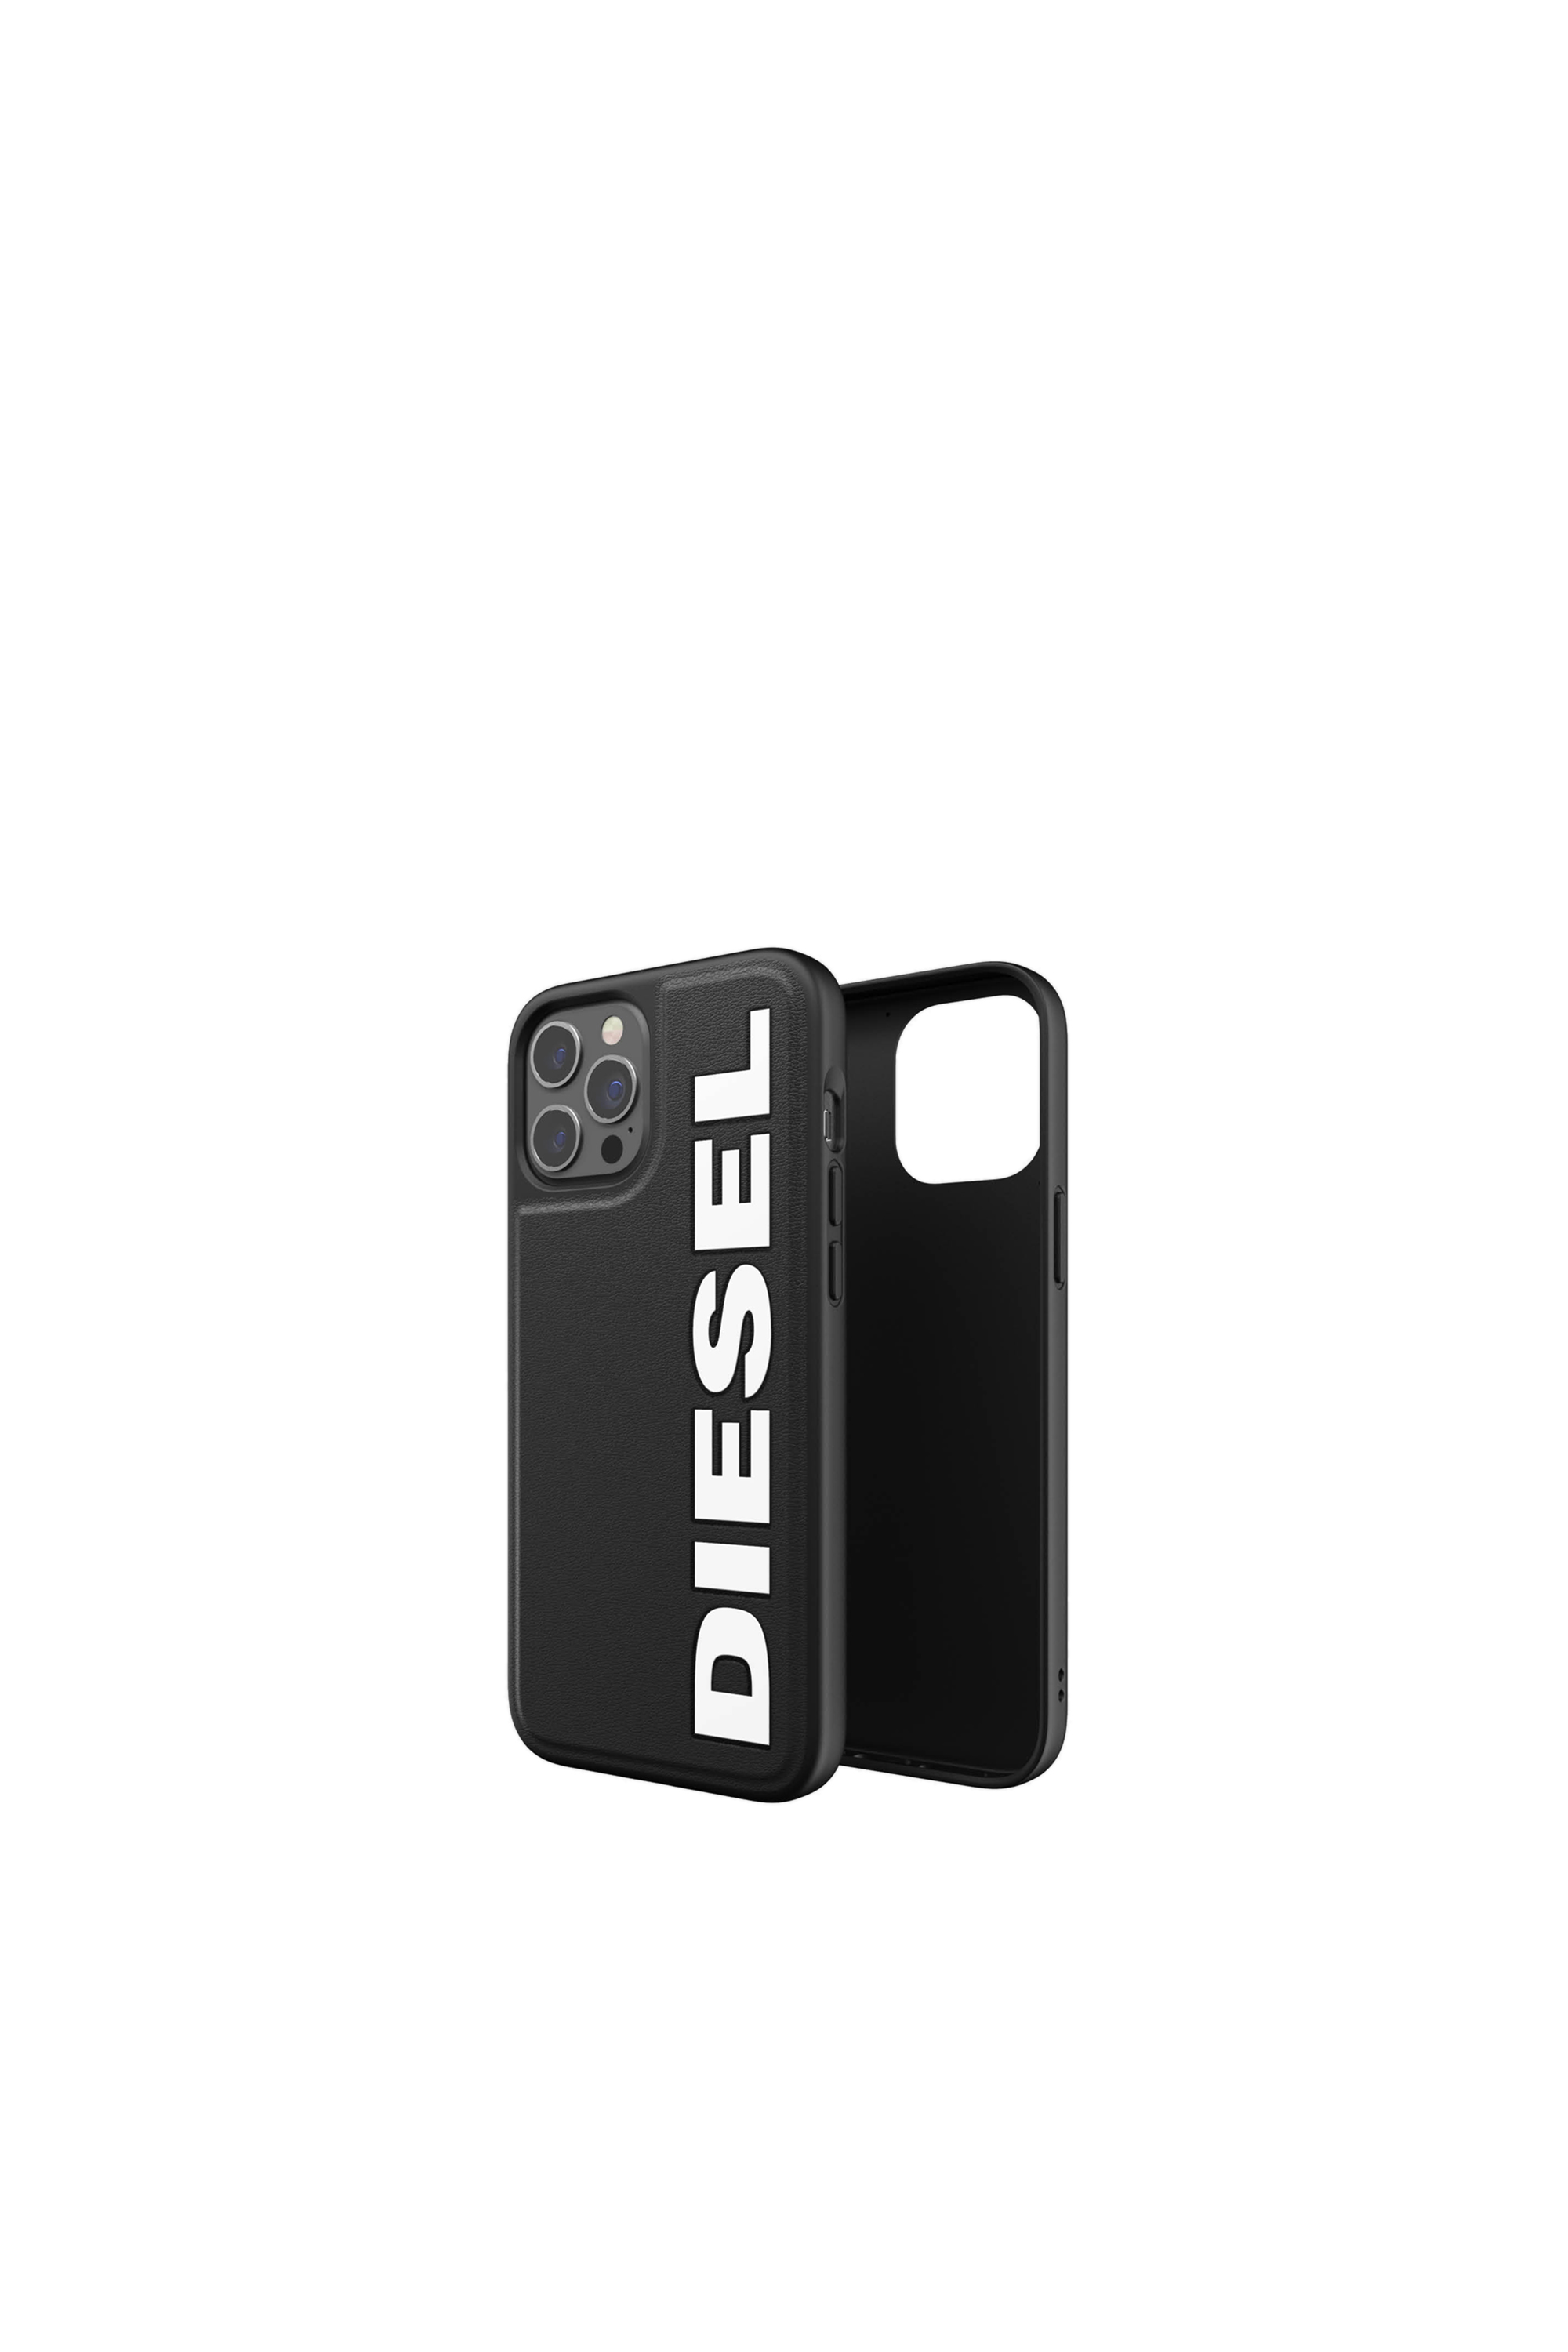 Diesel - 42493, Black - Image 1